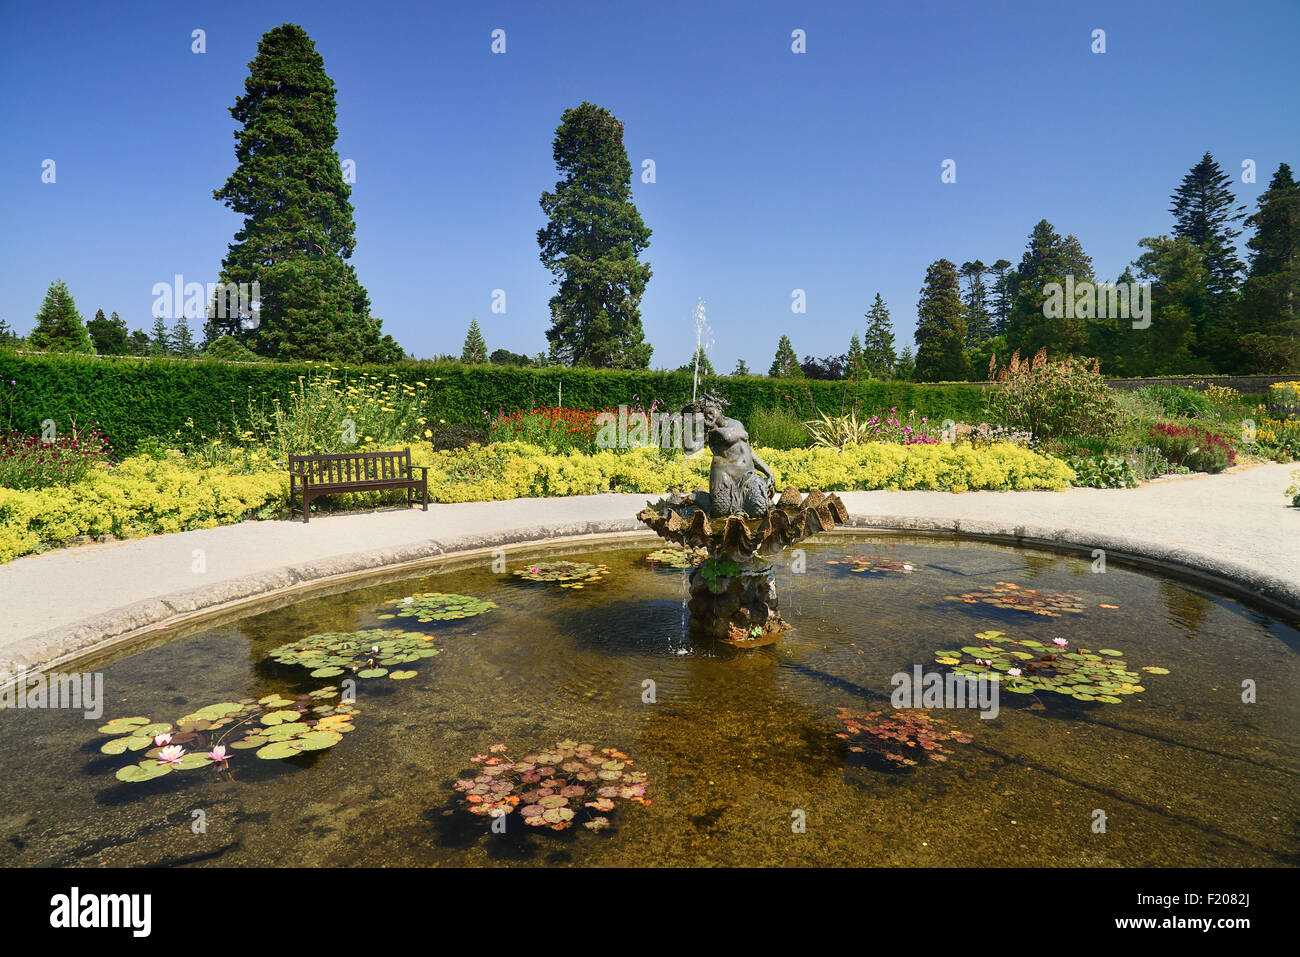 Irlanda, County Wicklow, Enniskerry, al Powerscourt House e giardini, una fontana e un laghetto in giardino murato. Foto Stock